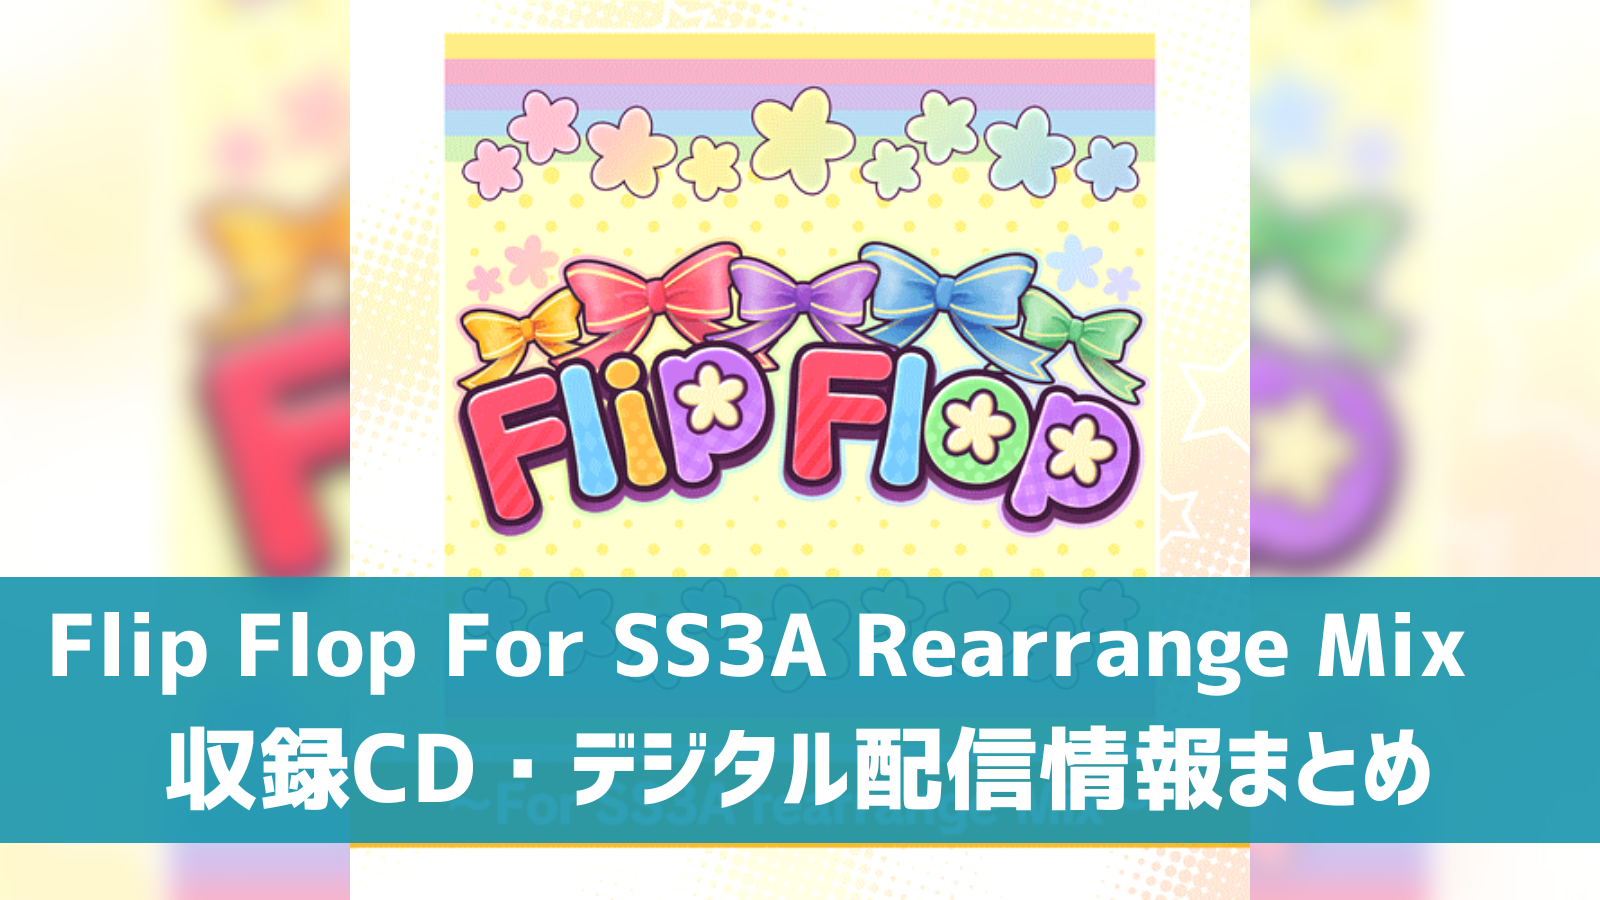 Flip Flop 〜For SS3A Rearrange Mix〜